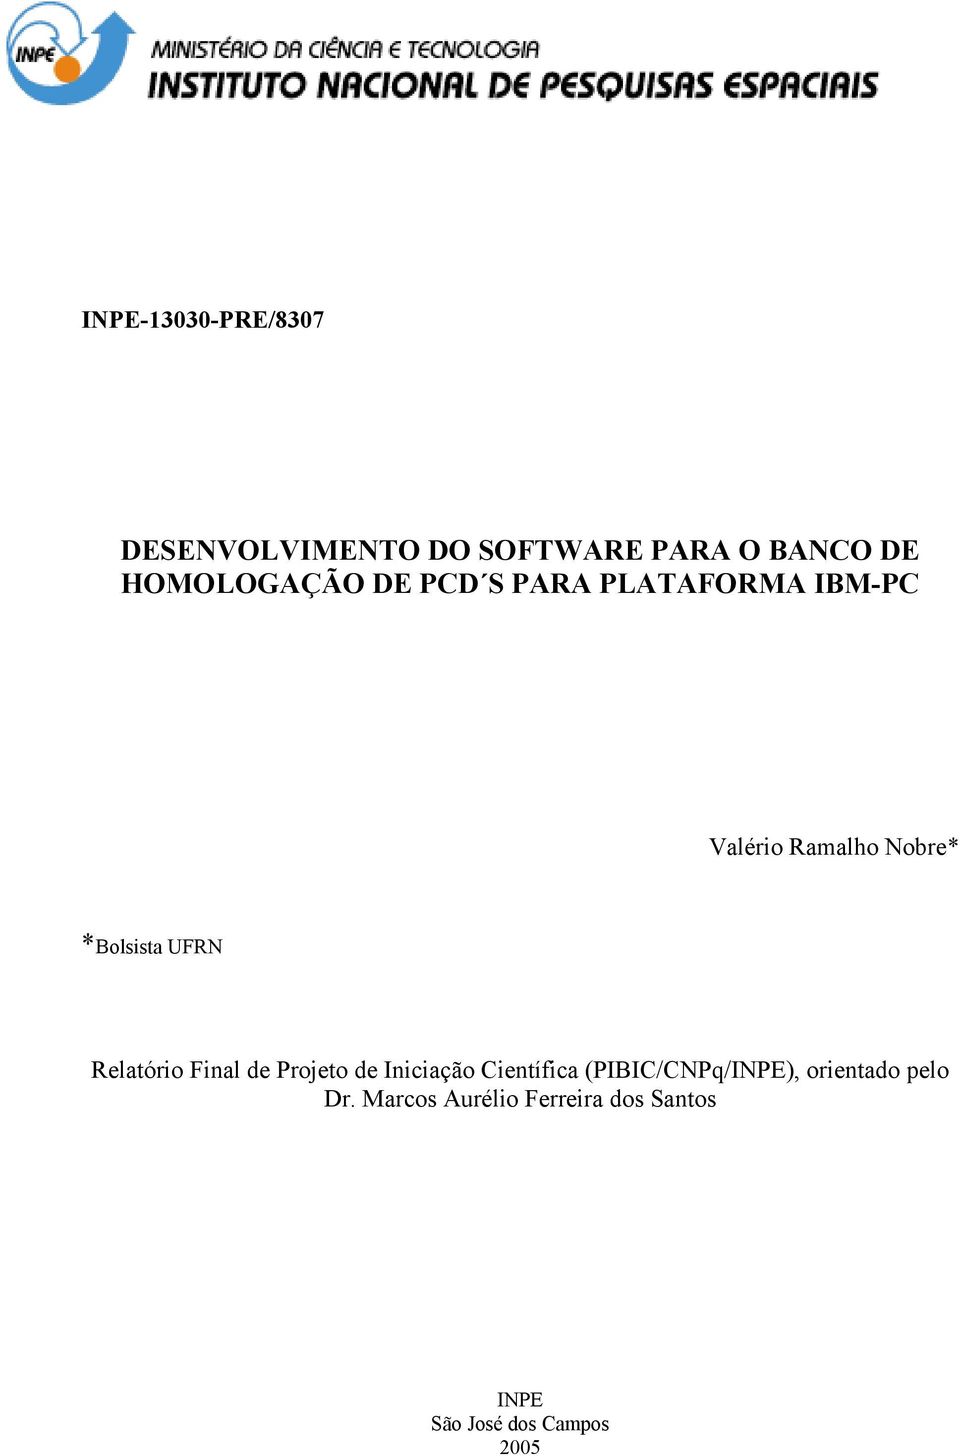 Relatório Final de Projeto de Iniciação Científica (PIBIC/CNPq/INPE),